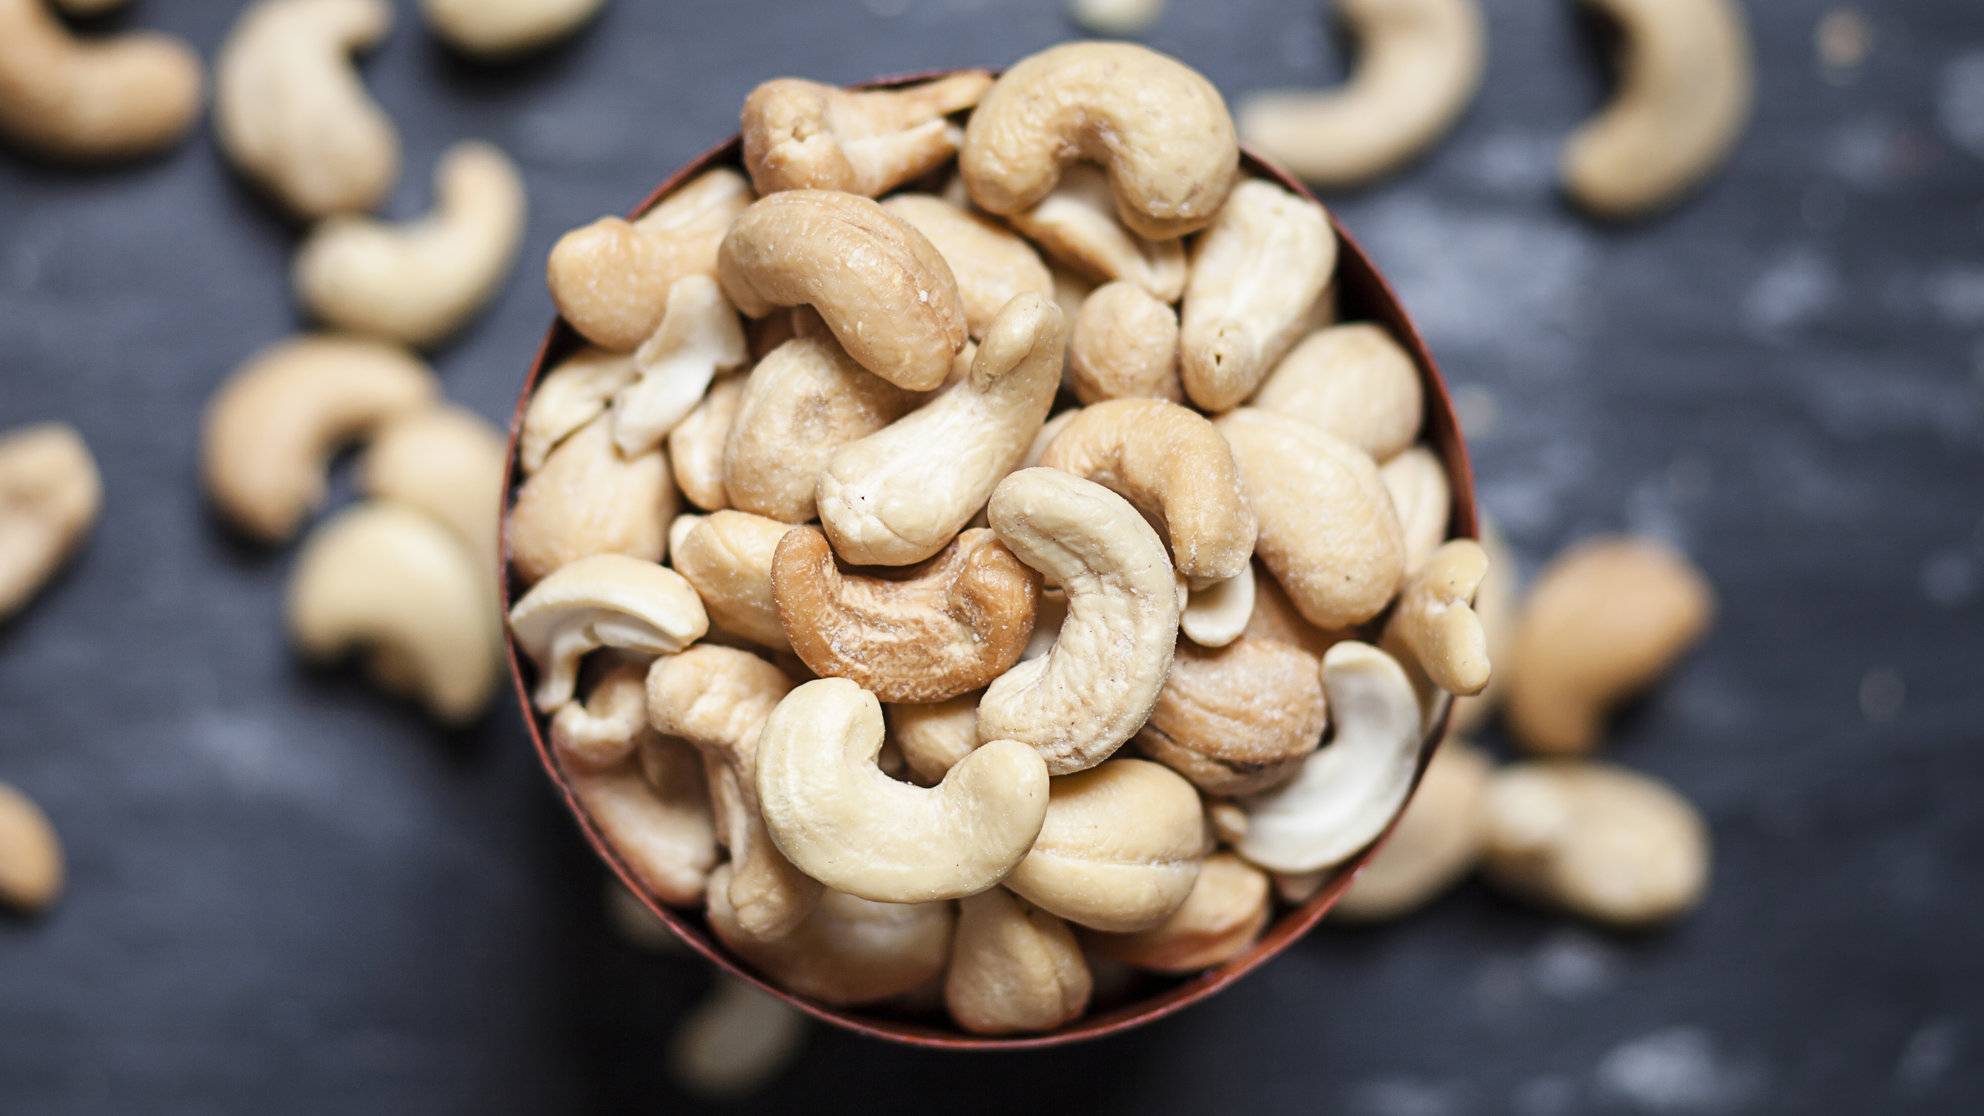 Чем полезны орехи кешью для организма человека, сколько нужно есть